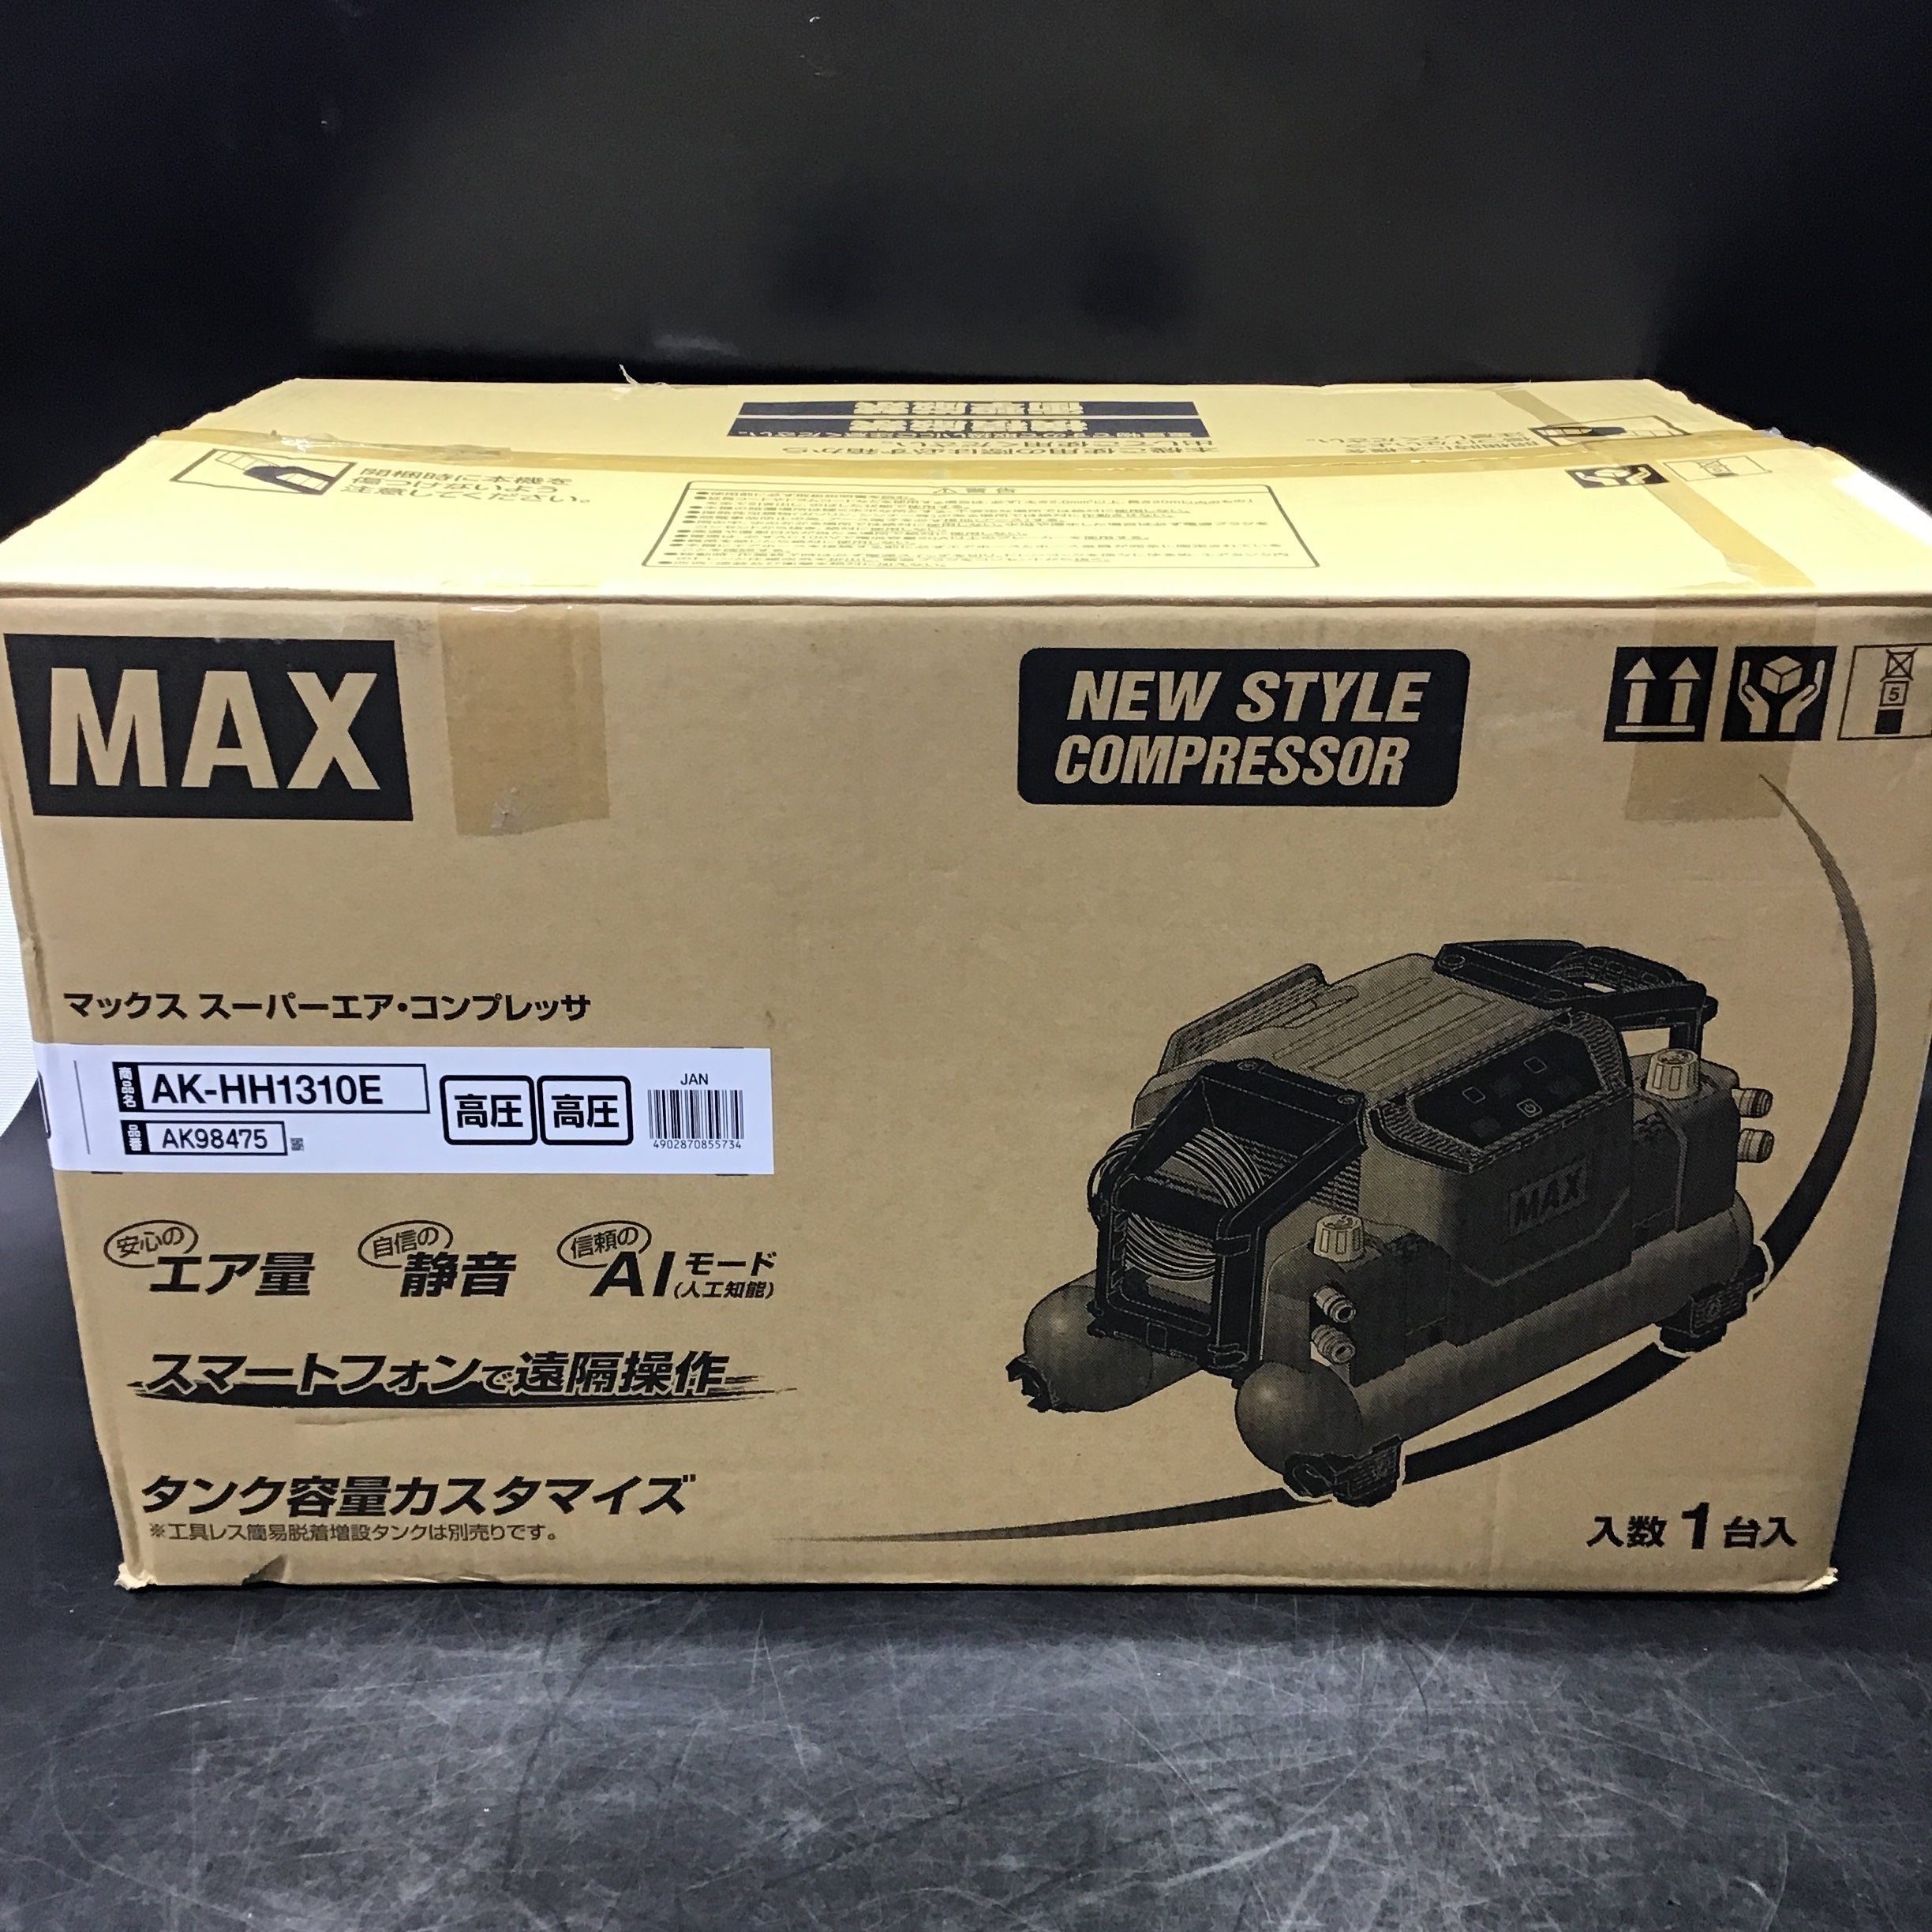 ☆マックス(MAX) 高圧専用エアコンプレッサ AK-HH1310E_レッド【桶川店